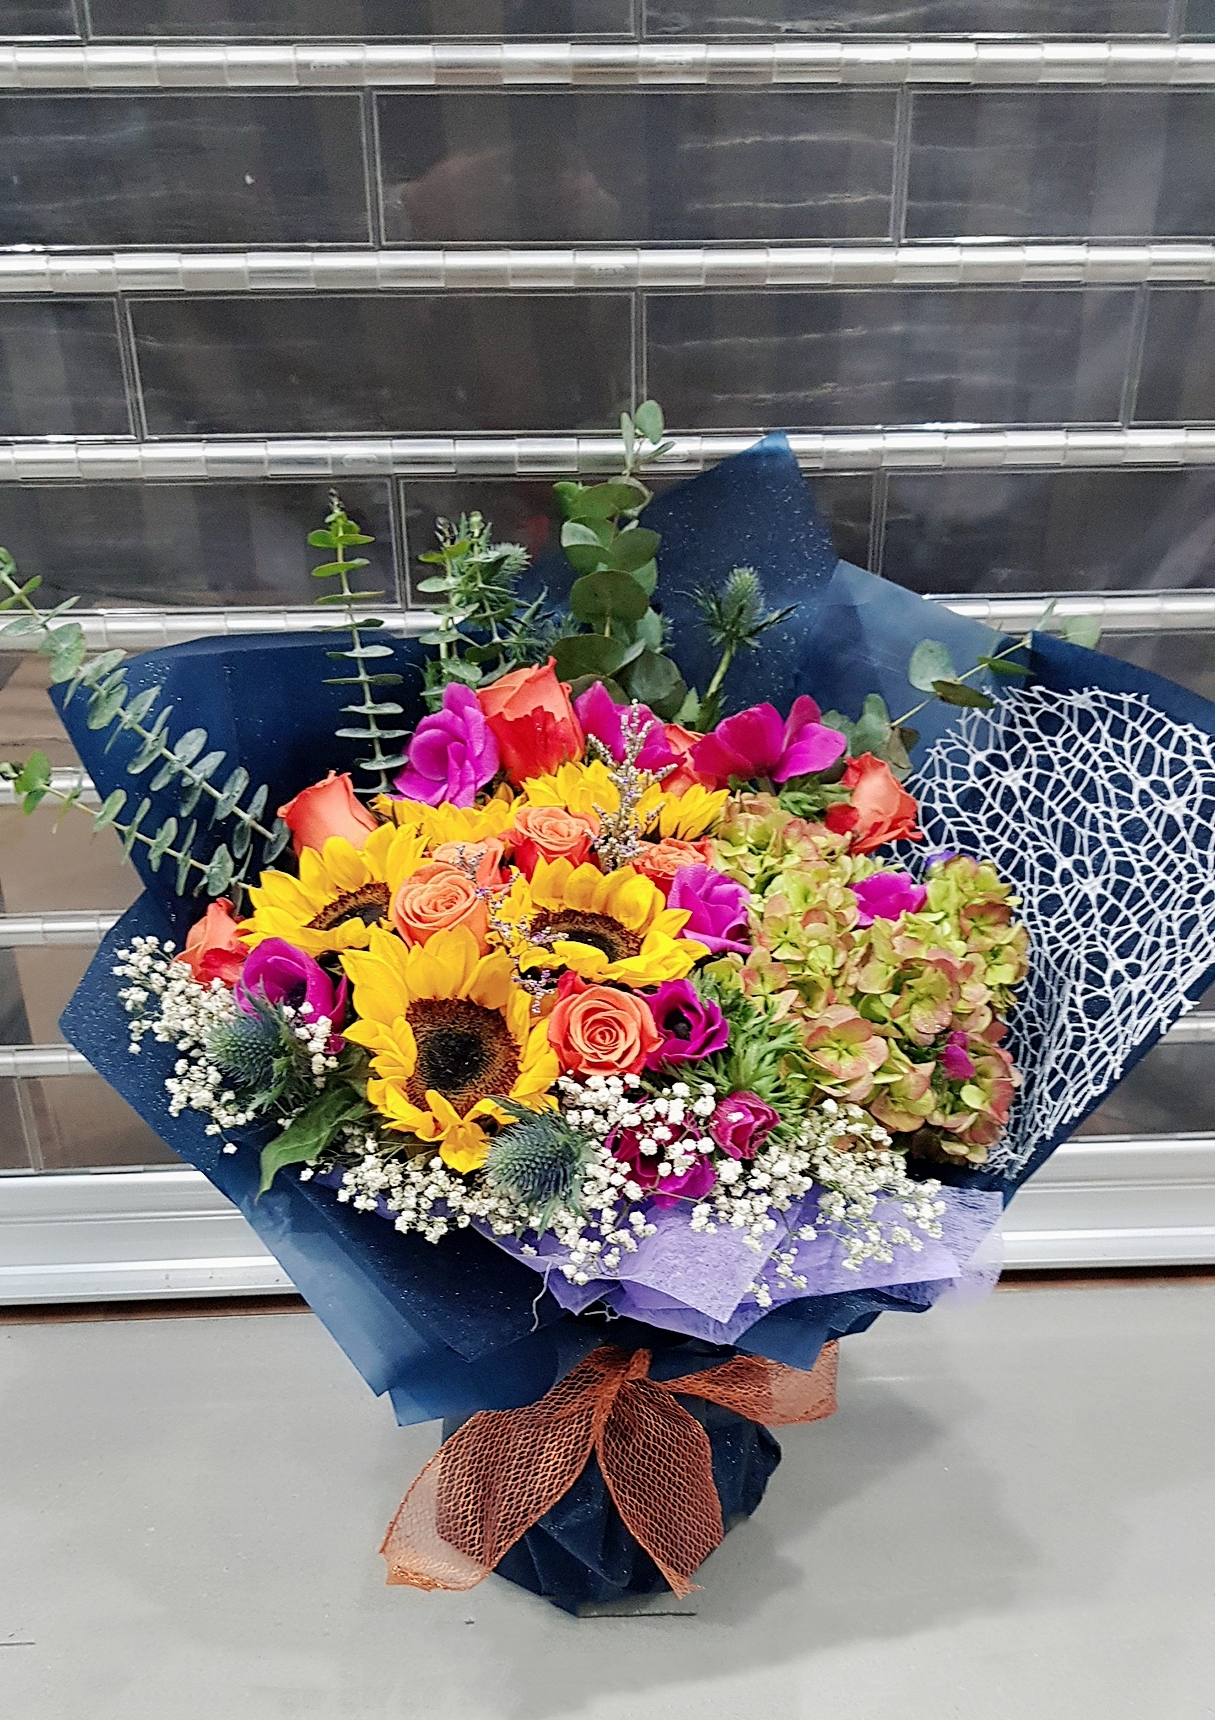 奪目繽紛鮮花花束， 按個人需要為顧客配搭不同色系感覺的花束或花藝禮品。